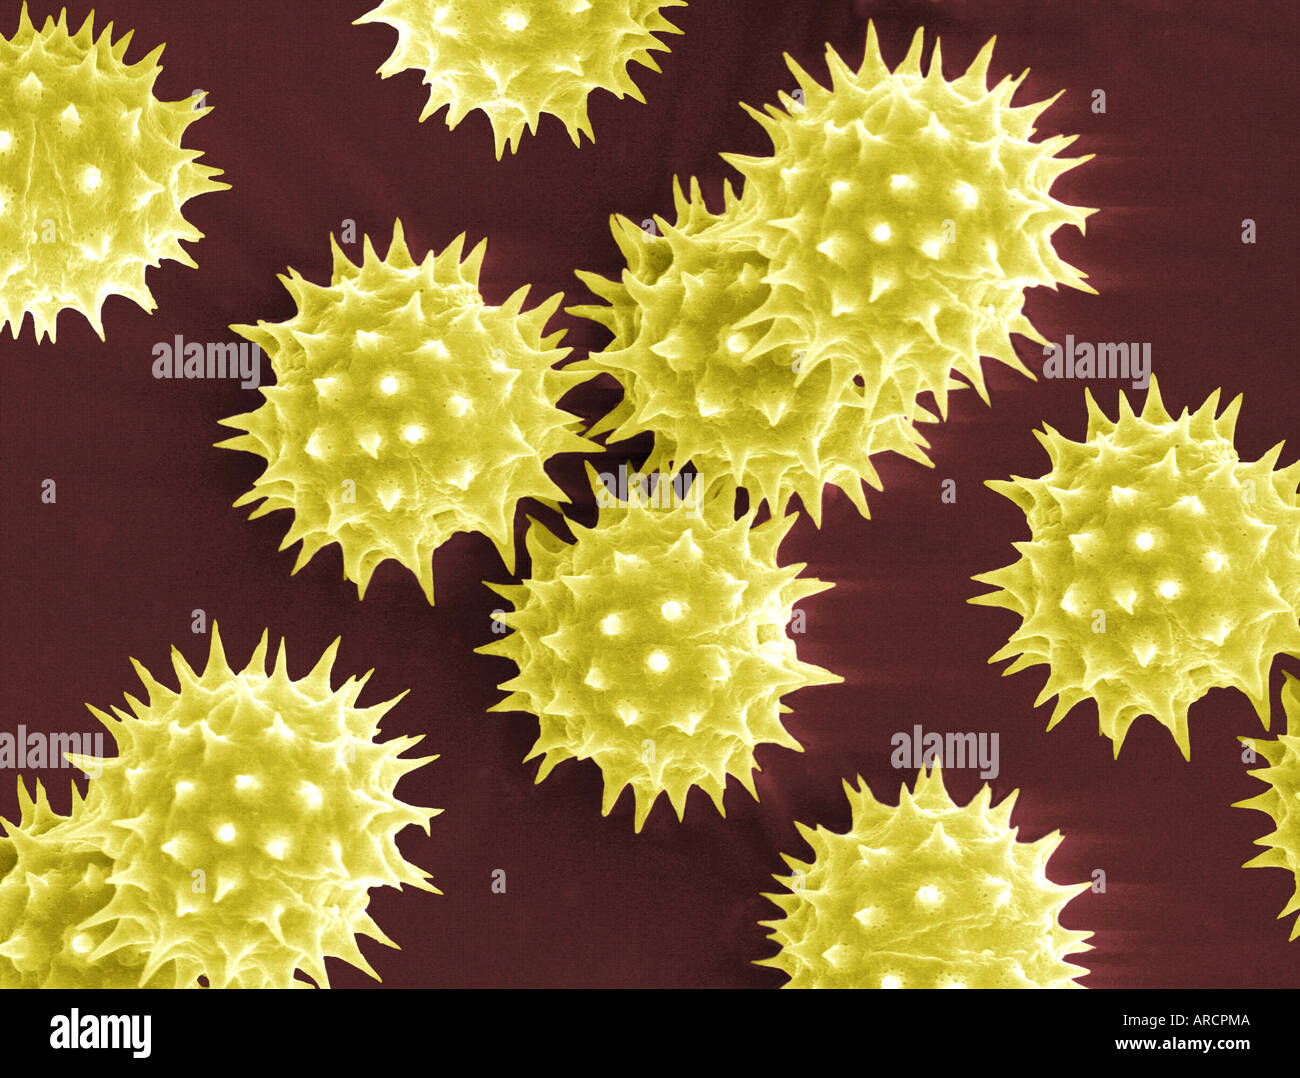 La scansione di immagine al microscopio elettronico di granelli di polline da Helianthus annuus (girasole comune). Foto Stock